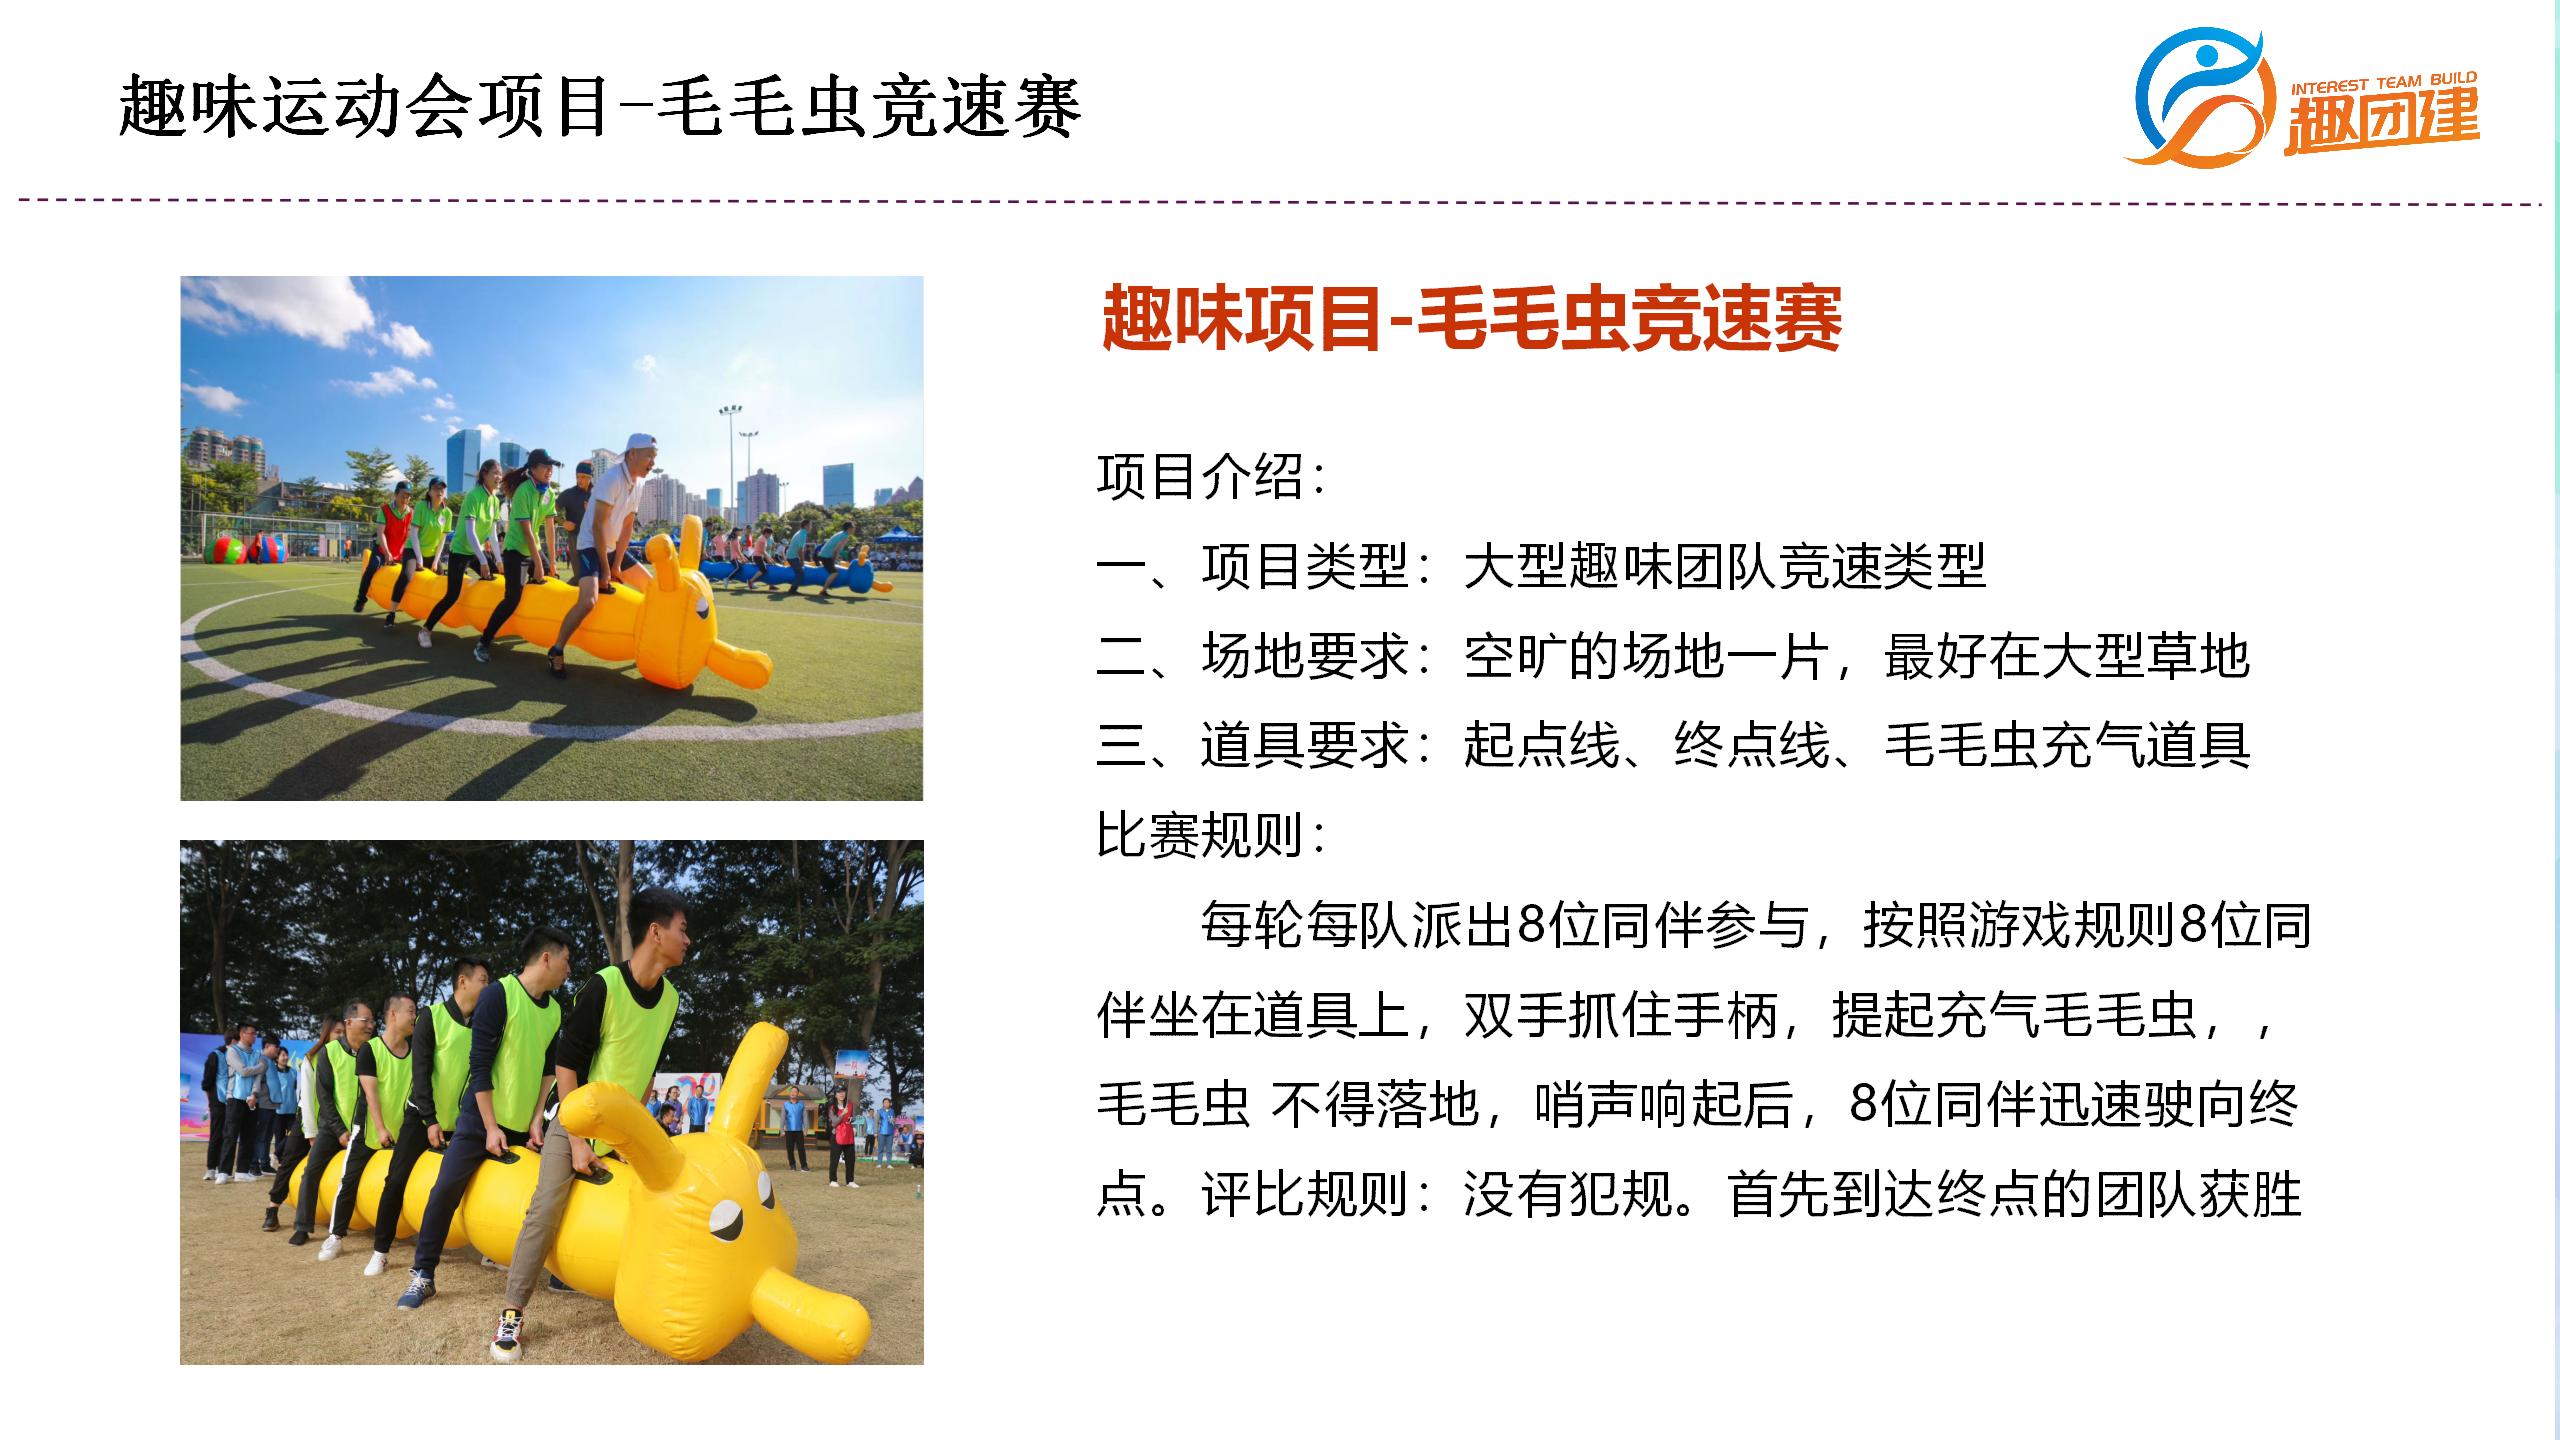 毛毛虫竞速赛-深圳企业趣味运动会拓展活动项目